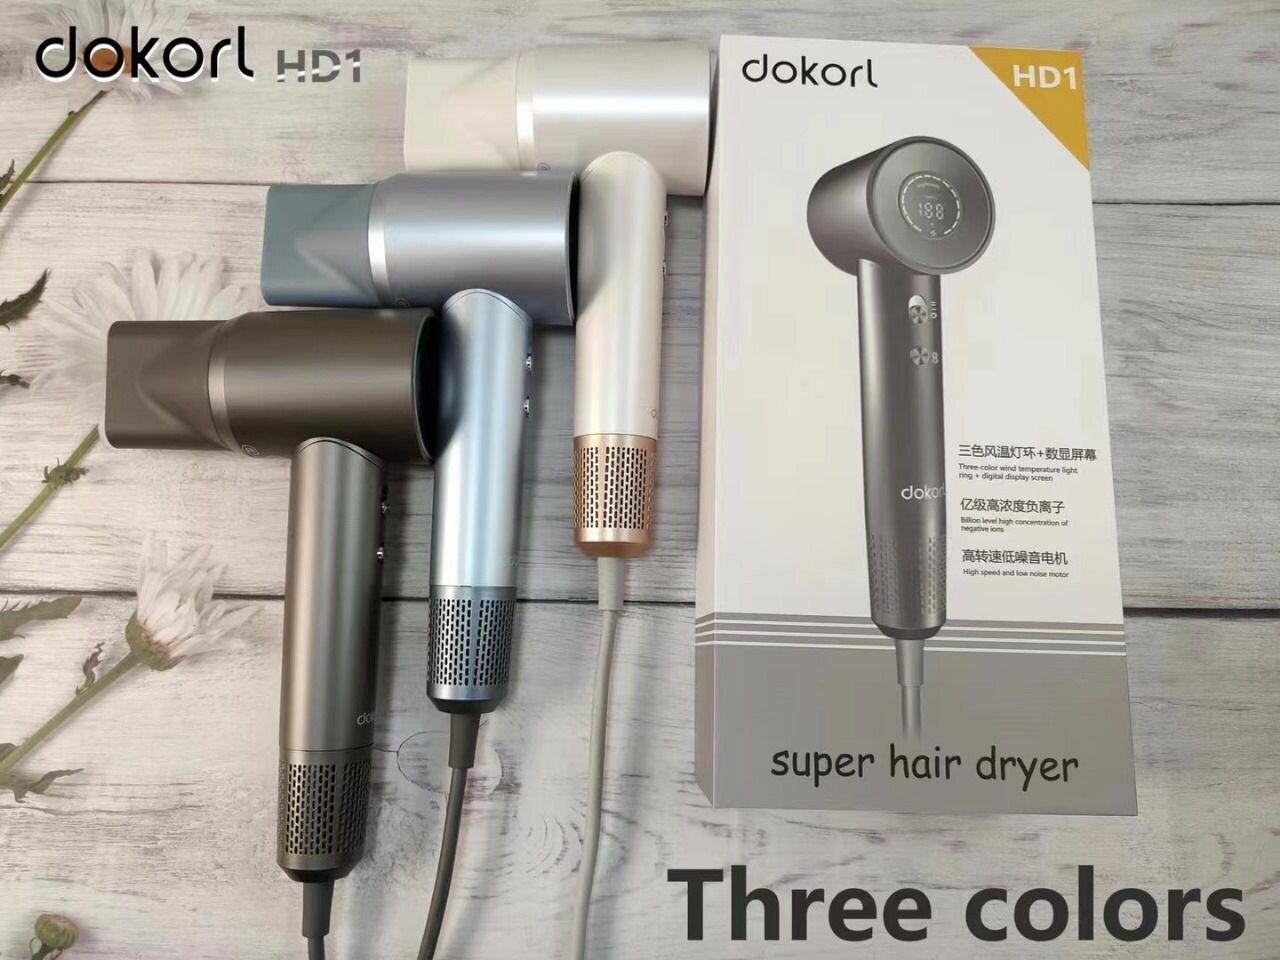 Фен для волос "Dokorl HD1" Профессиональный с ионизацией и LED-дисплеем. Белый и серый.